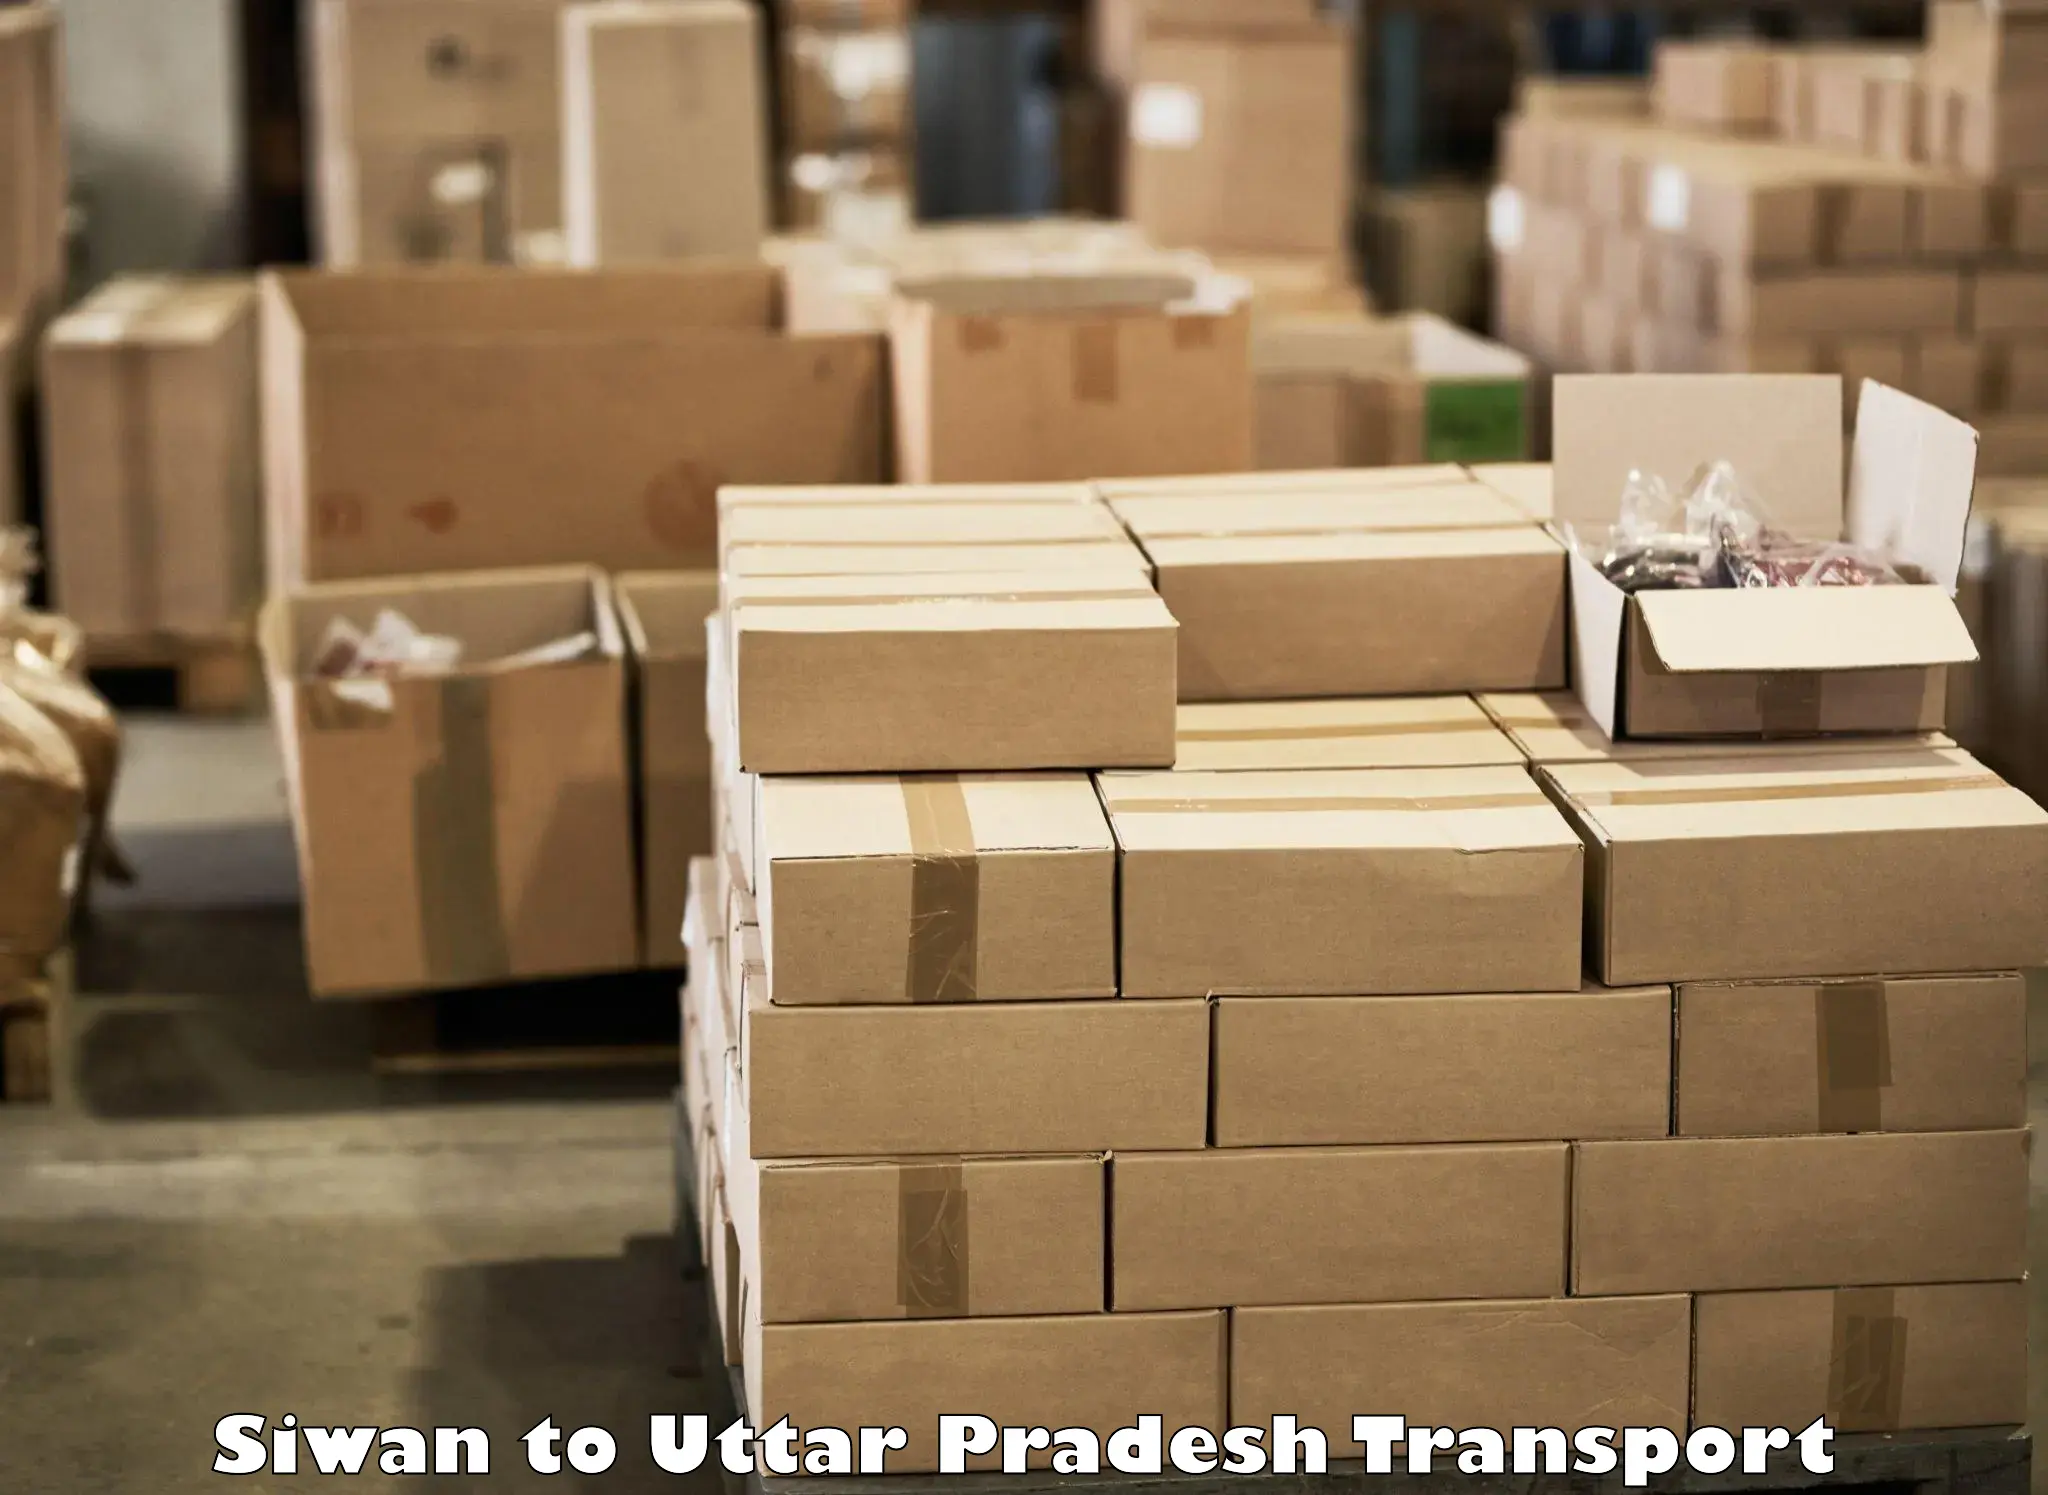 Transport in sharing in Siwan to Lakhimpur Kheri